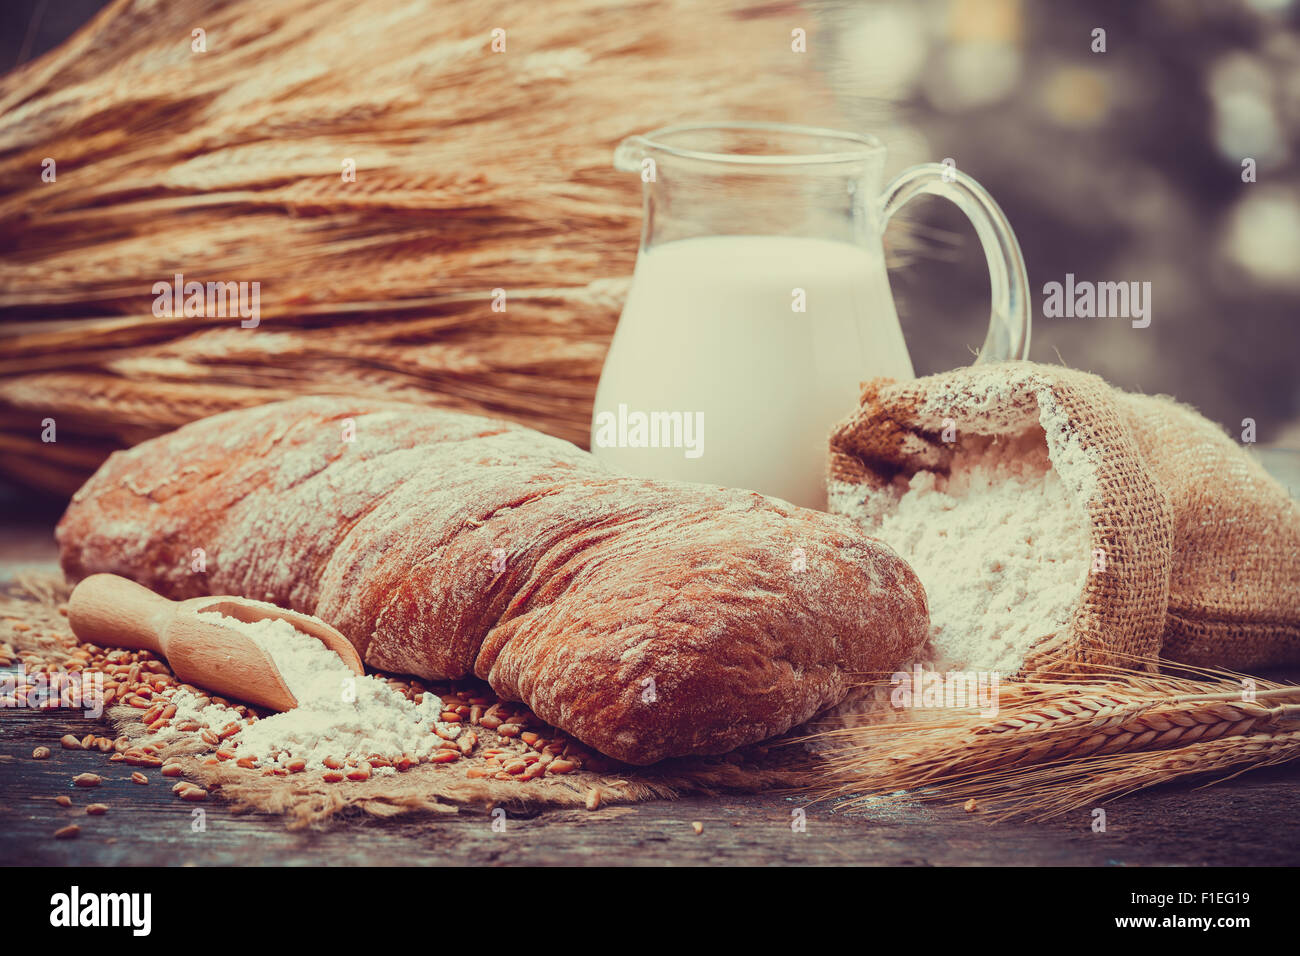 Pane fresco, brocca del latte, sacco di farina di grano e un covone di grano su un tavolo di legno. Retrò stilizzato. Foto Stock